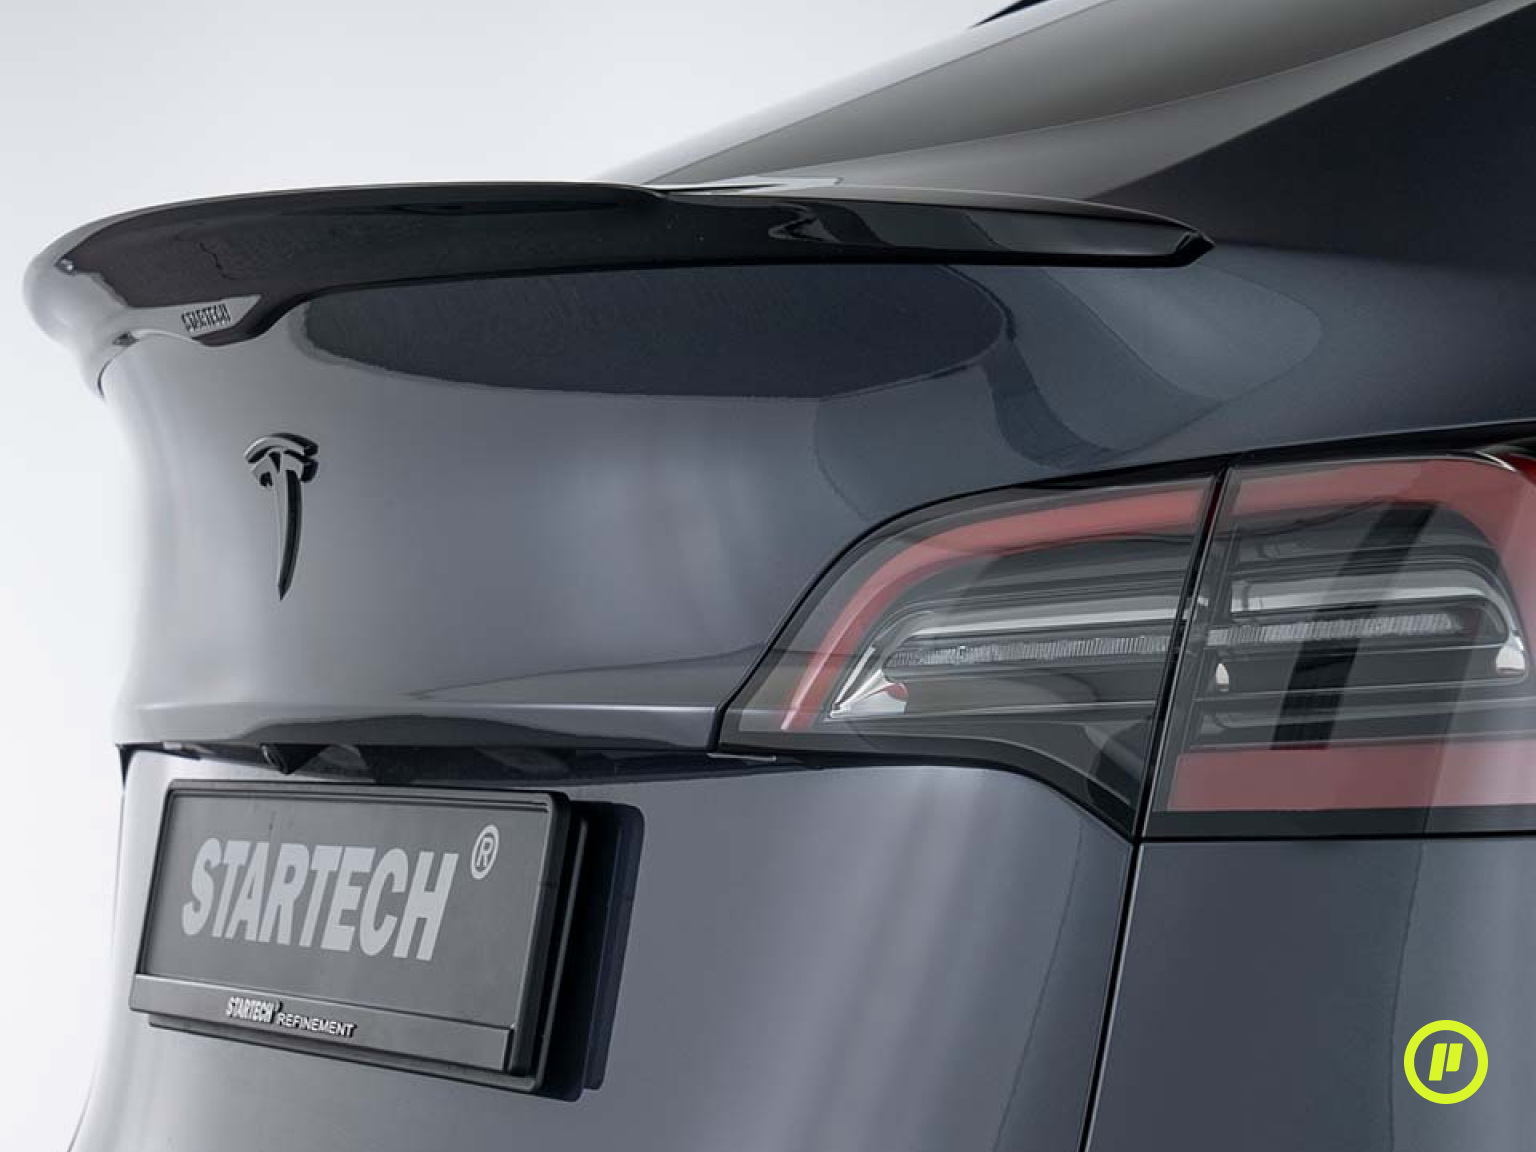 Startech Complete Exterior Kit for Tesla Model Y (2020+)